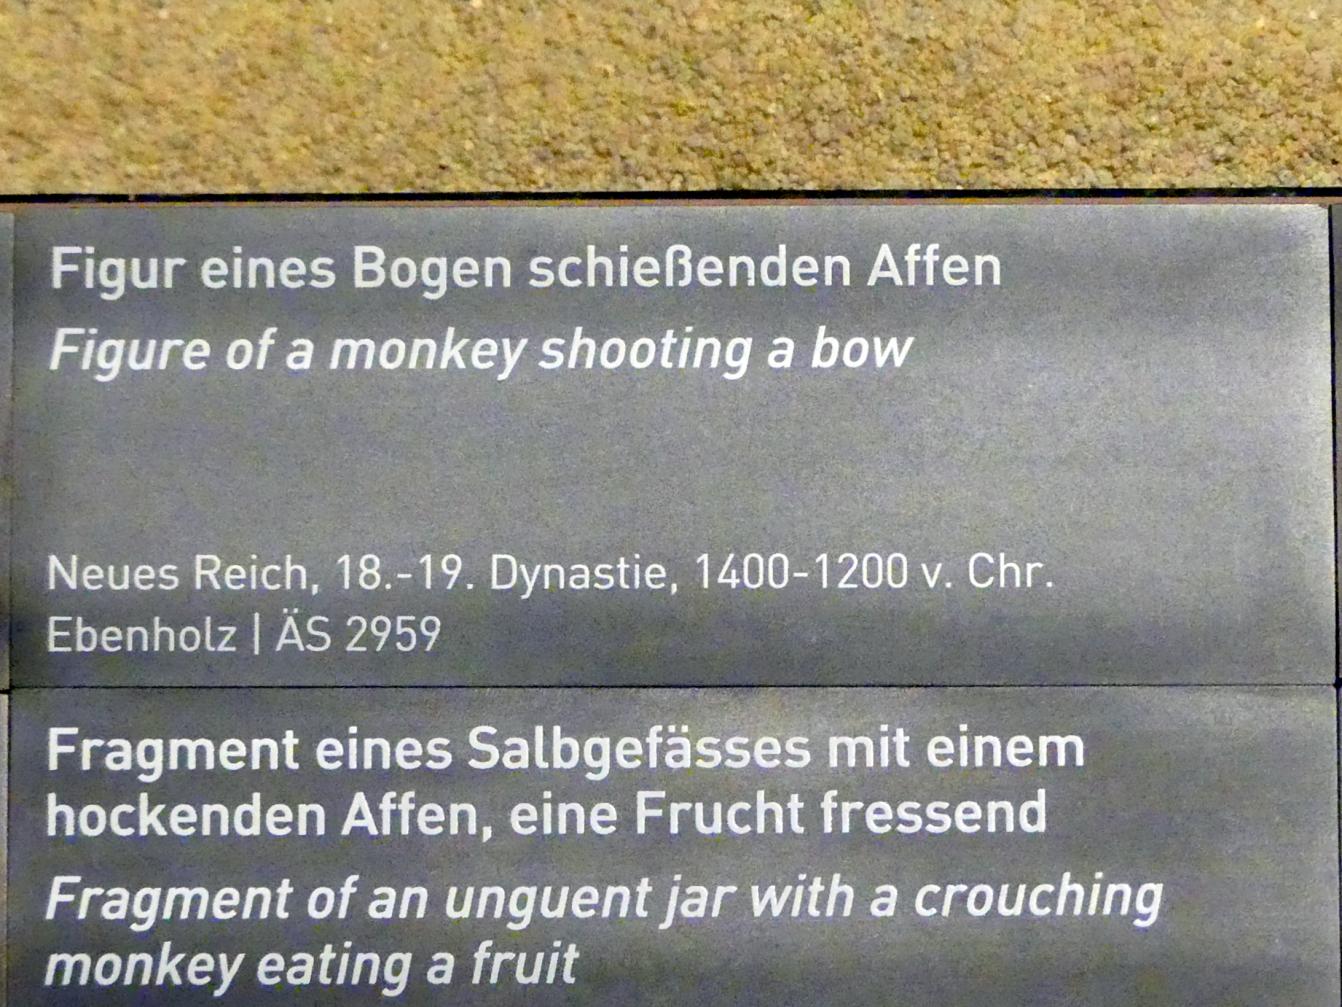 Figur eines Bogen schießenden Affen, Neues Reich, 953 - 887 v. Chr., 1400 - 1200 v. Chr., Bild 2/2